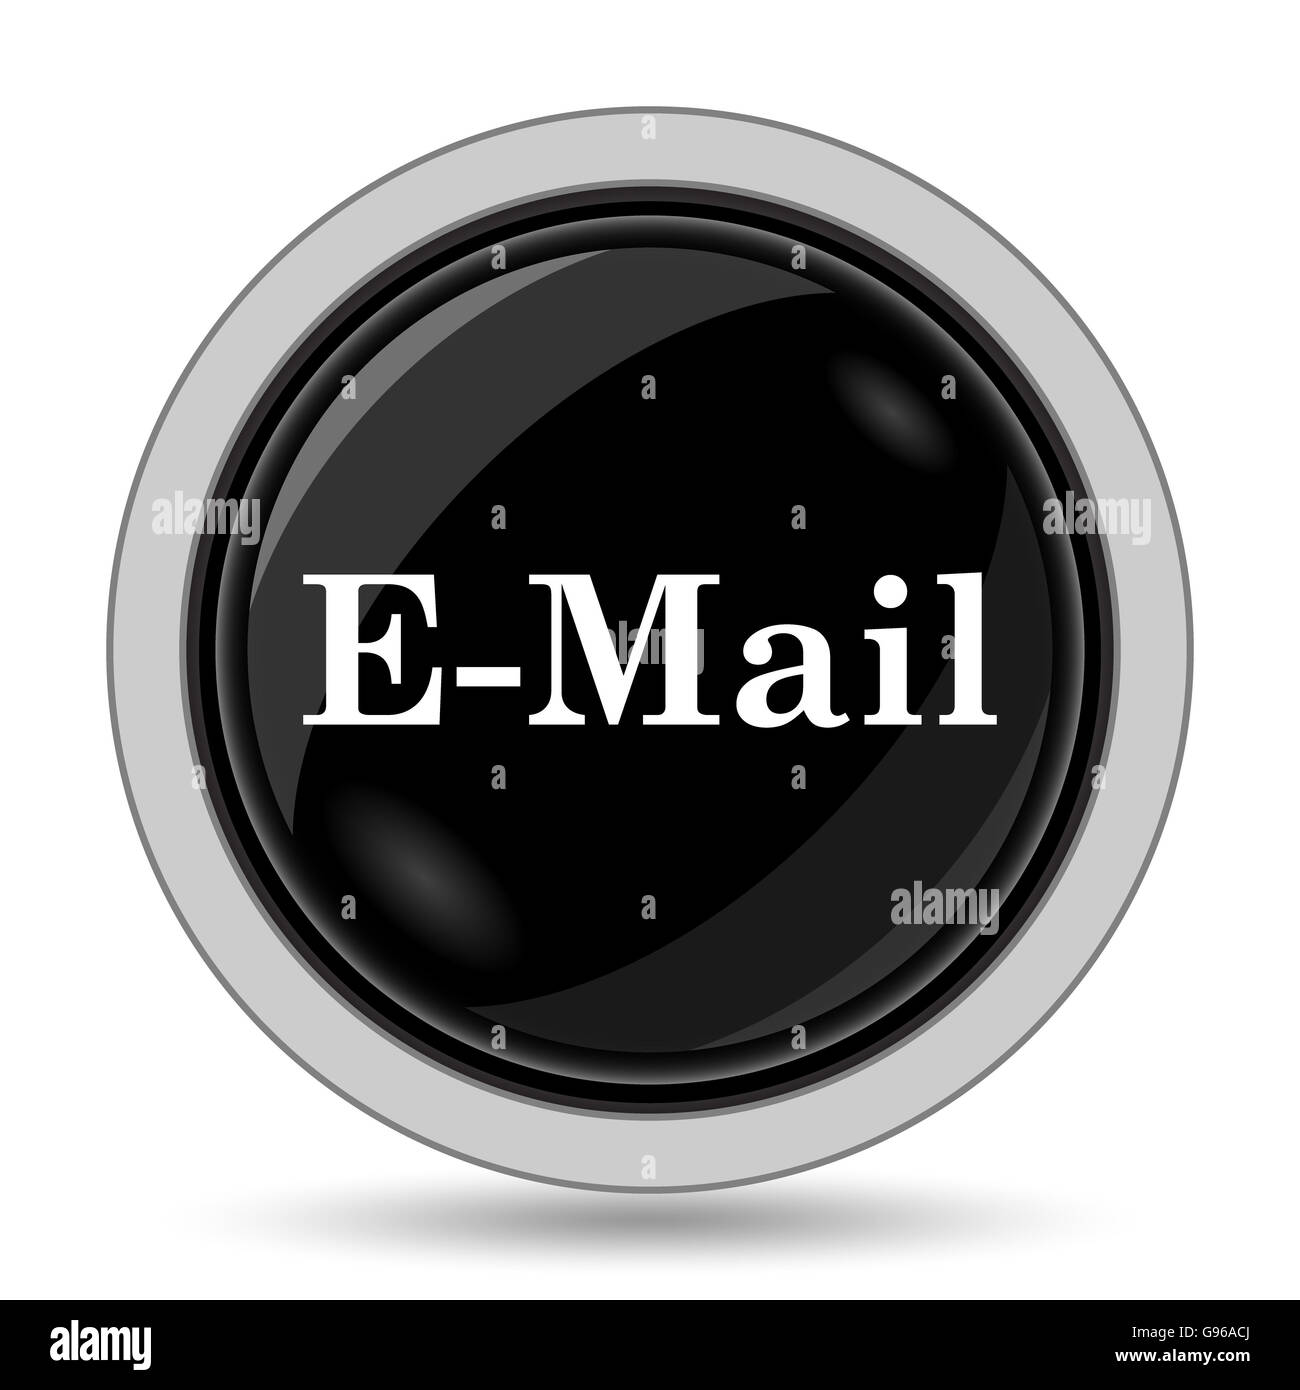 E-mail icon. Internet button on white background. Stock Photo